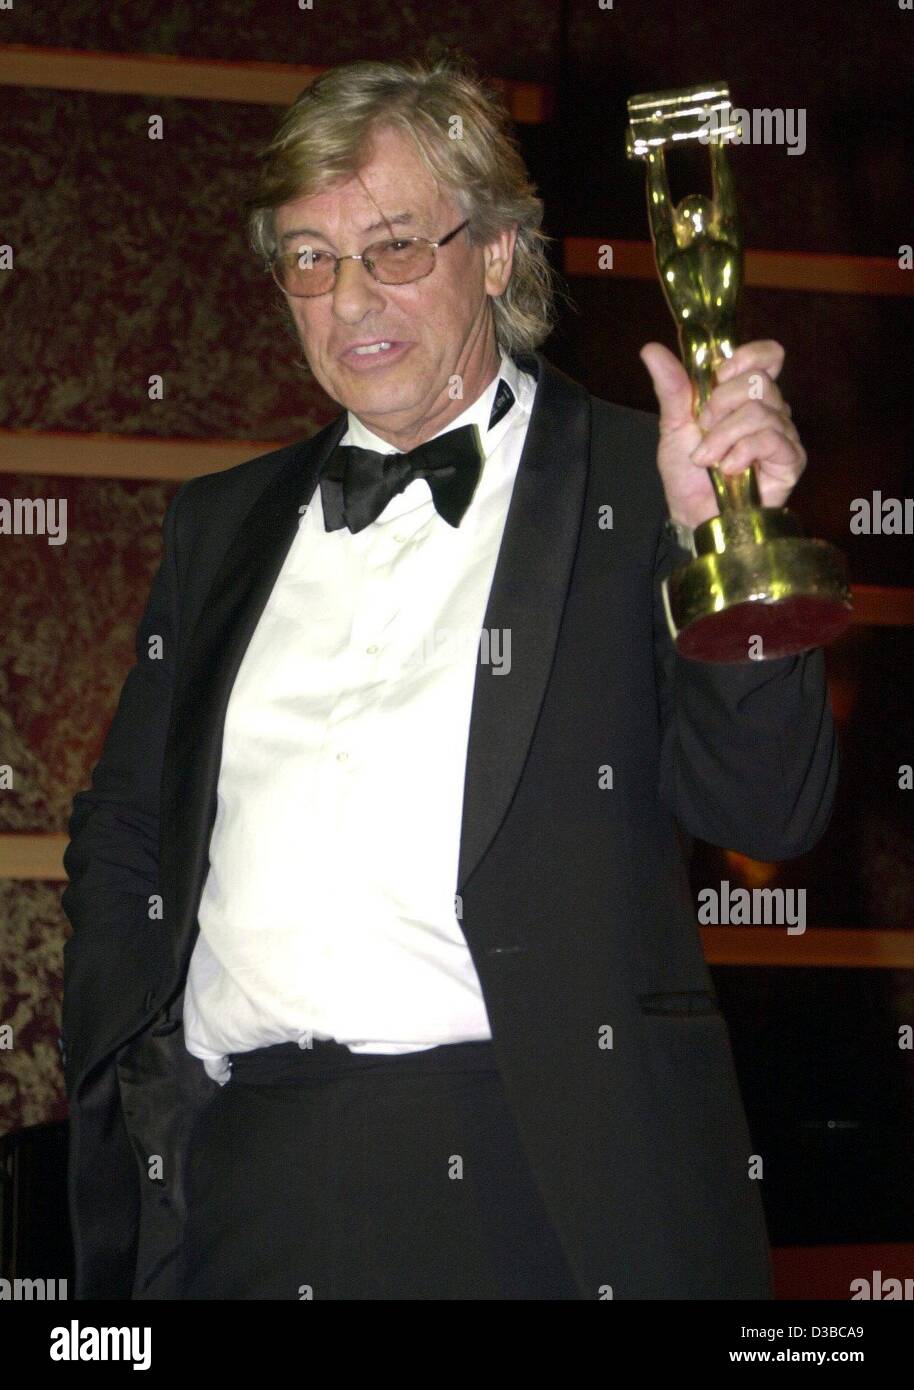 (Afp) - Directeur d'Hollywood néerlandais Paul Verhoeven montre son monde Video Award, à Munich, le 31 janvier 2002. Il a reçu le prix pour ses réalisations de toute une vie. Verhoeven, né à Amsterdam le 18 juillet 1938, a débuté sa carrière aux Pays-Bas avec des films comme "Turcs fruit' ('Turkish Deligh Banque D'Images